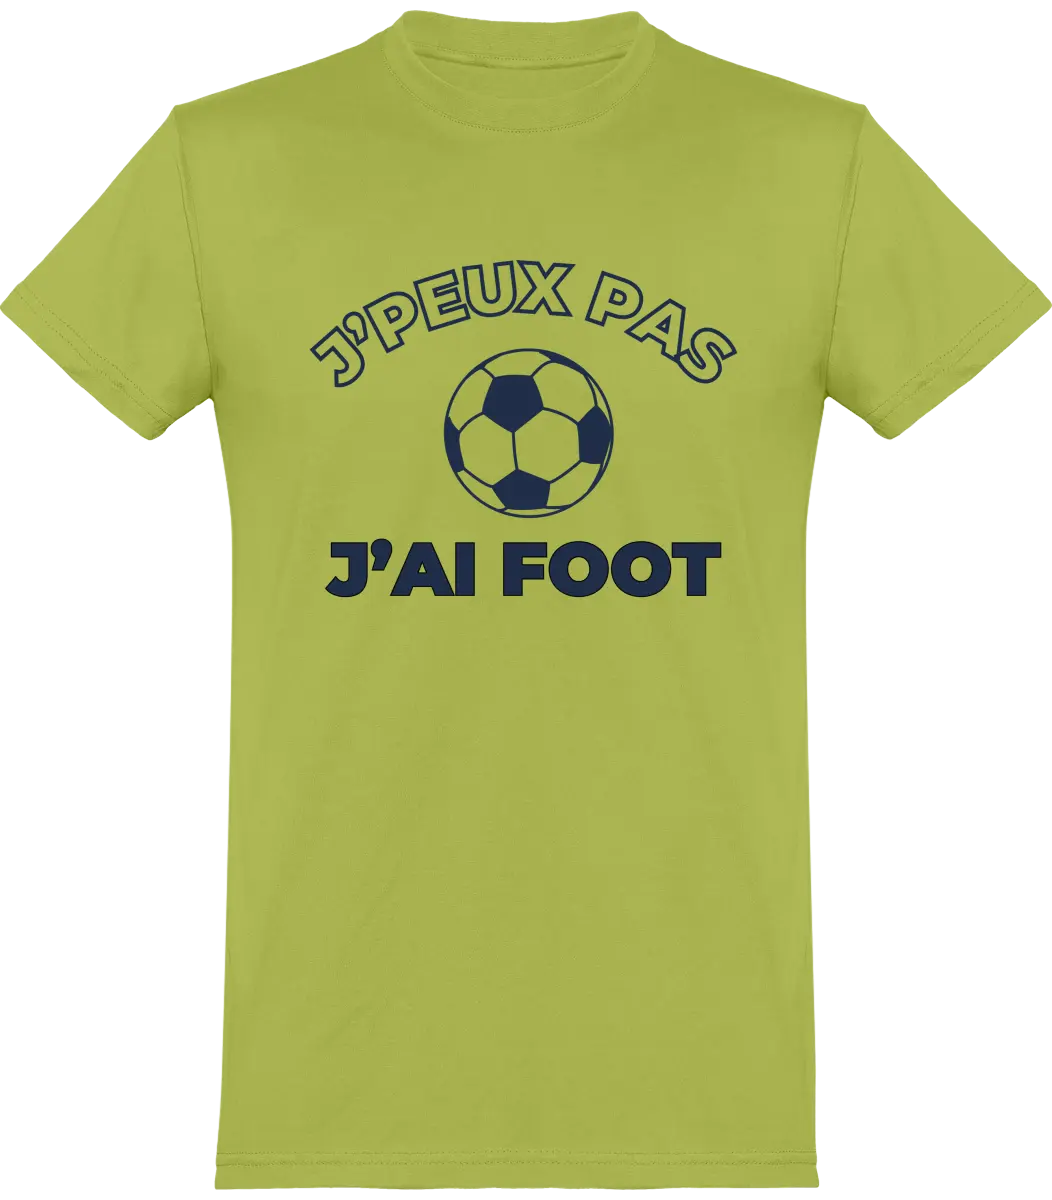 T-shirt Foot "J'peux pas j'ai apéro" | Mixte - French Humour